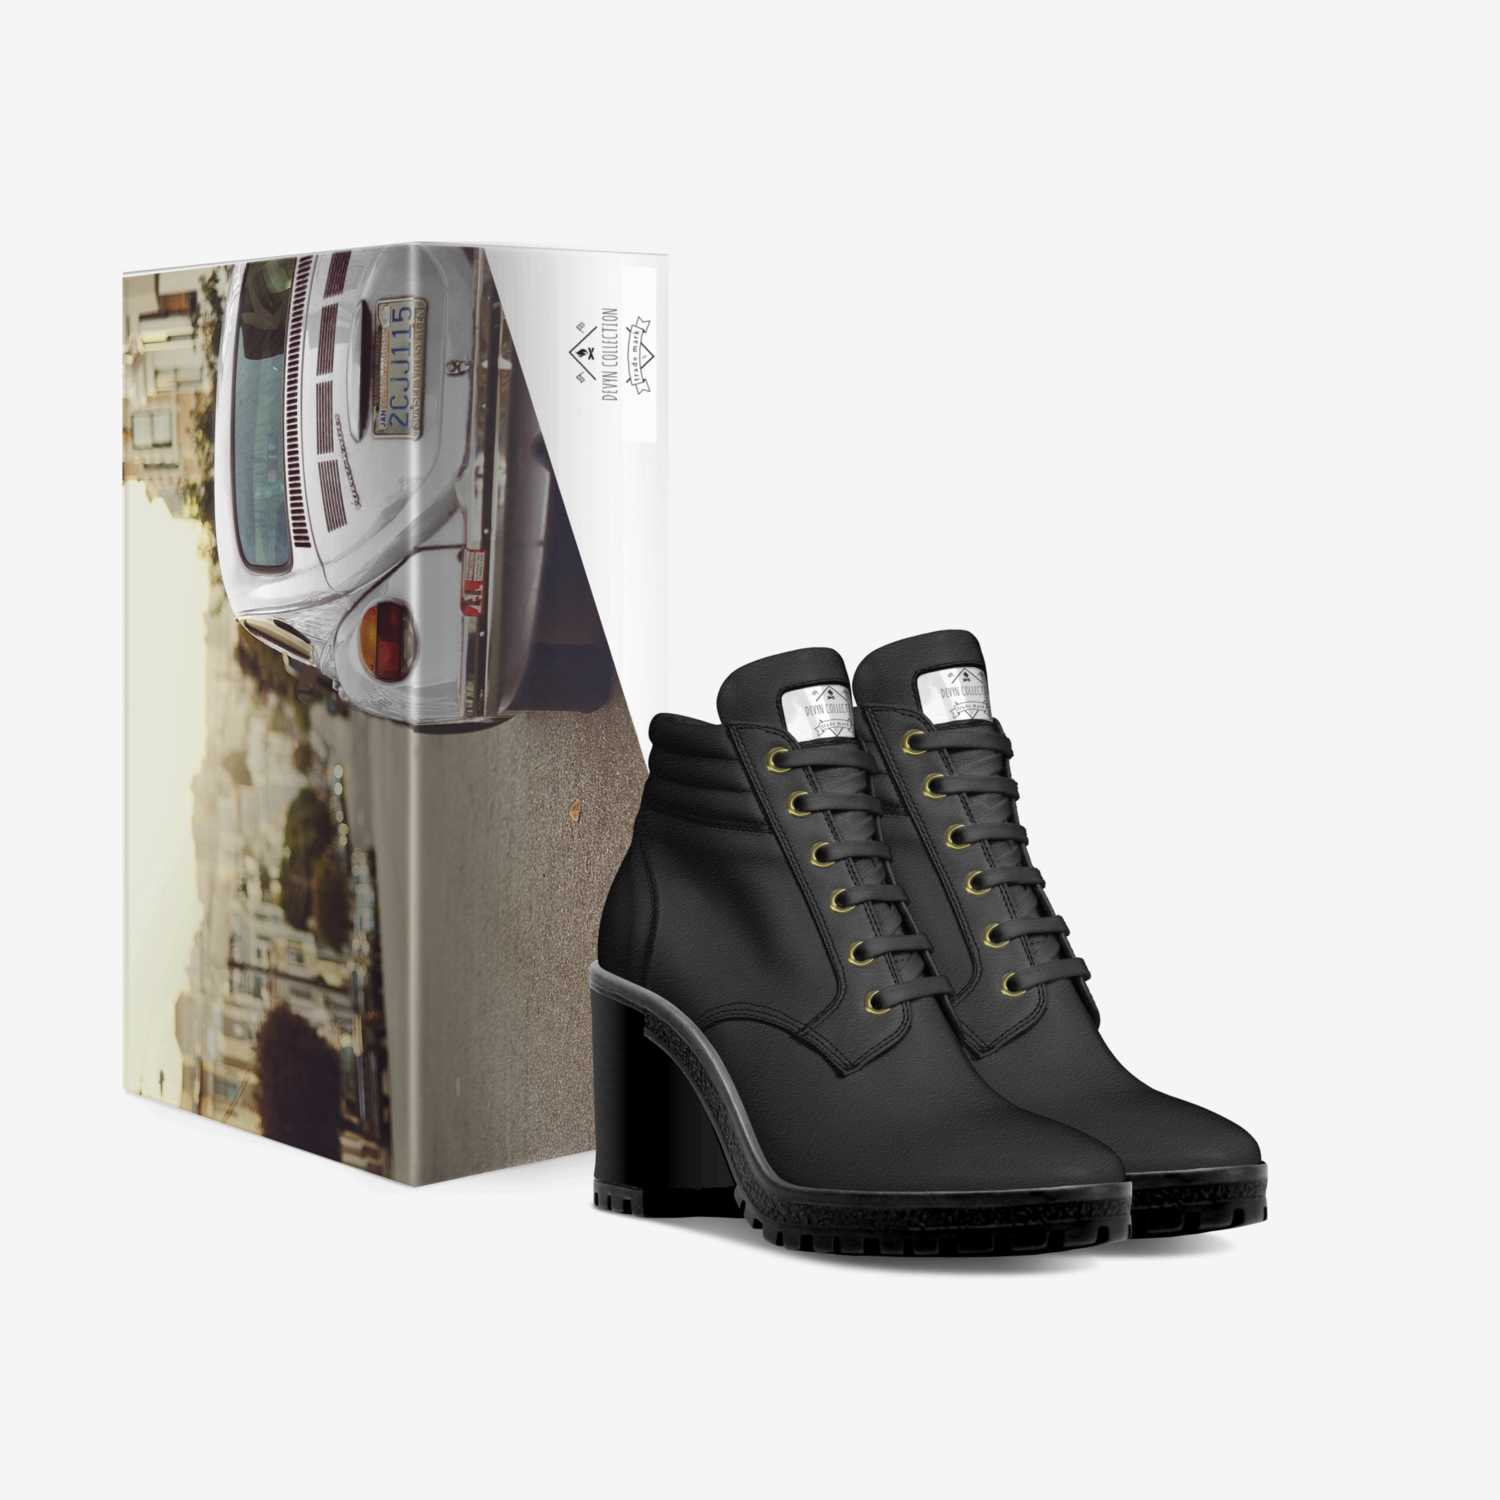 Devyn custom made in Italy shoes by Devyn Flynn | Box view